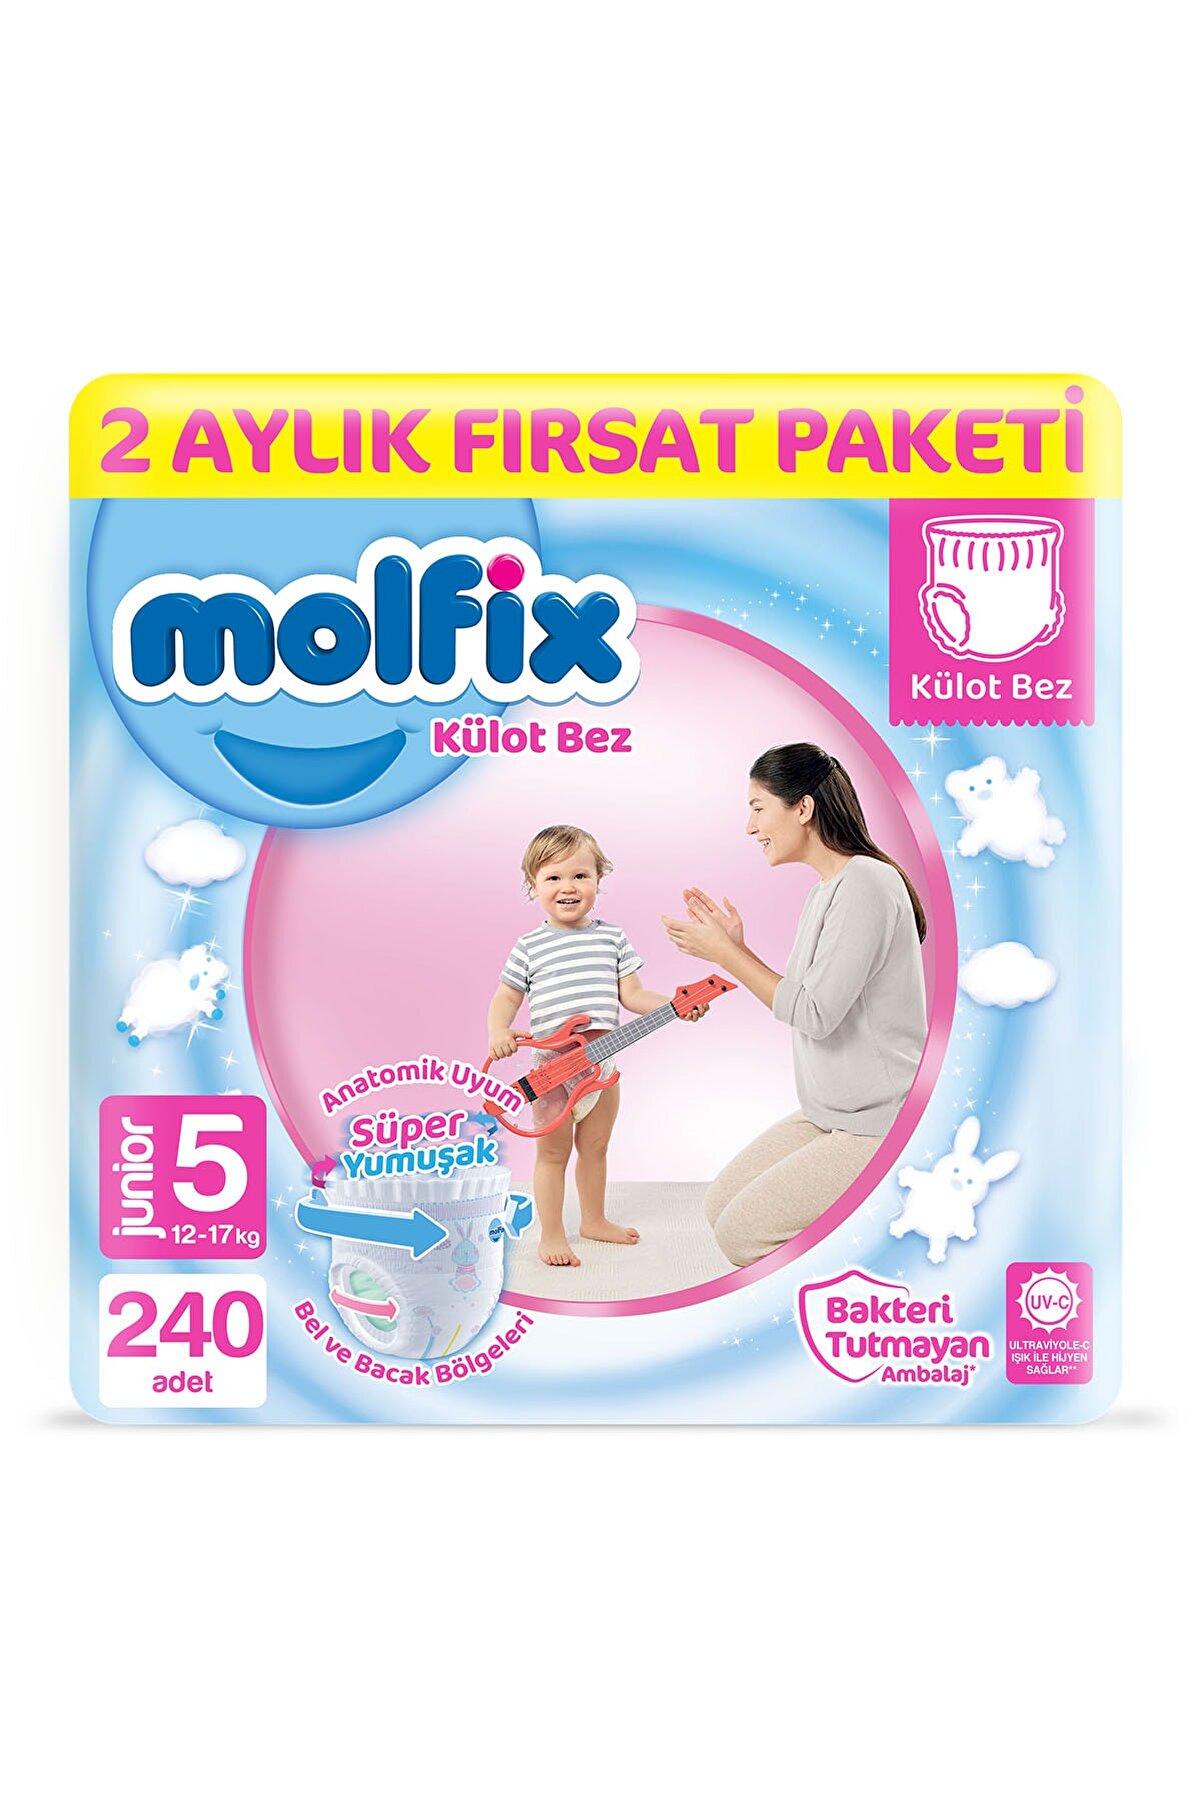 Molfix Külot Bez 5 Beden Junior 2 Aylık Fırsat Paketi 240 adet